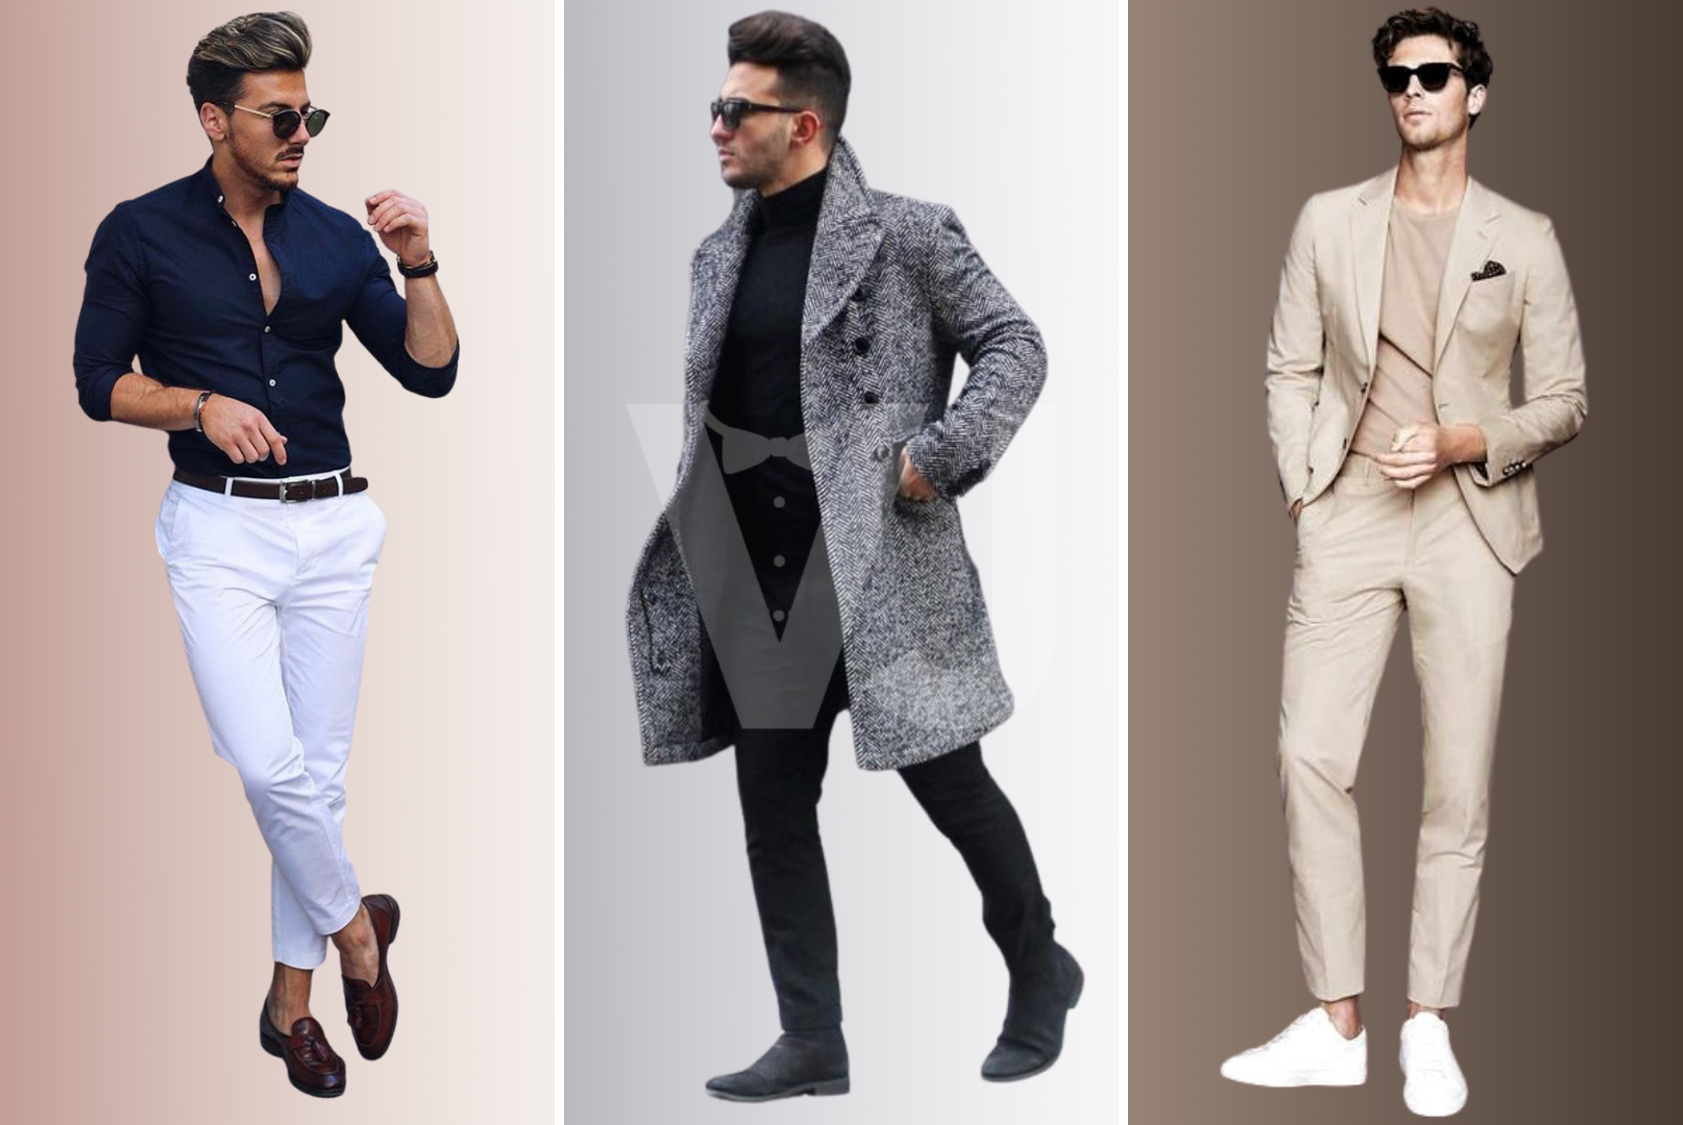 VJTIPS | Pantalones básicos para hombre, cómo y cuándo usarlos | Asesoría  de imagen y comunicación para hombres